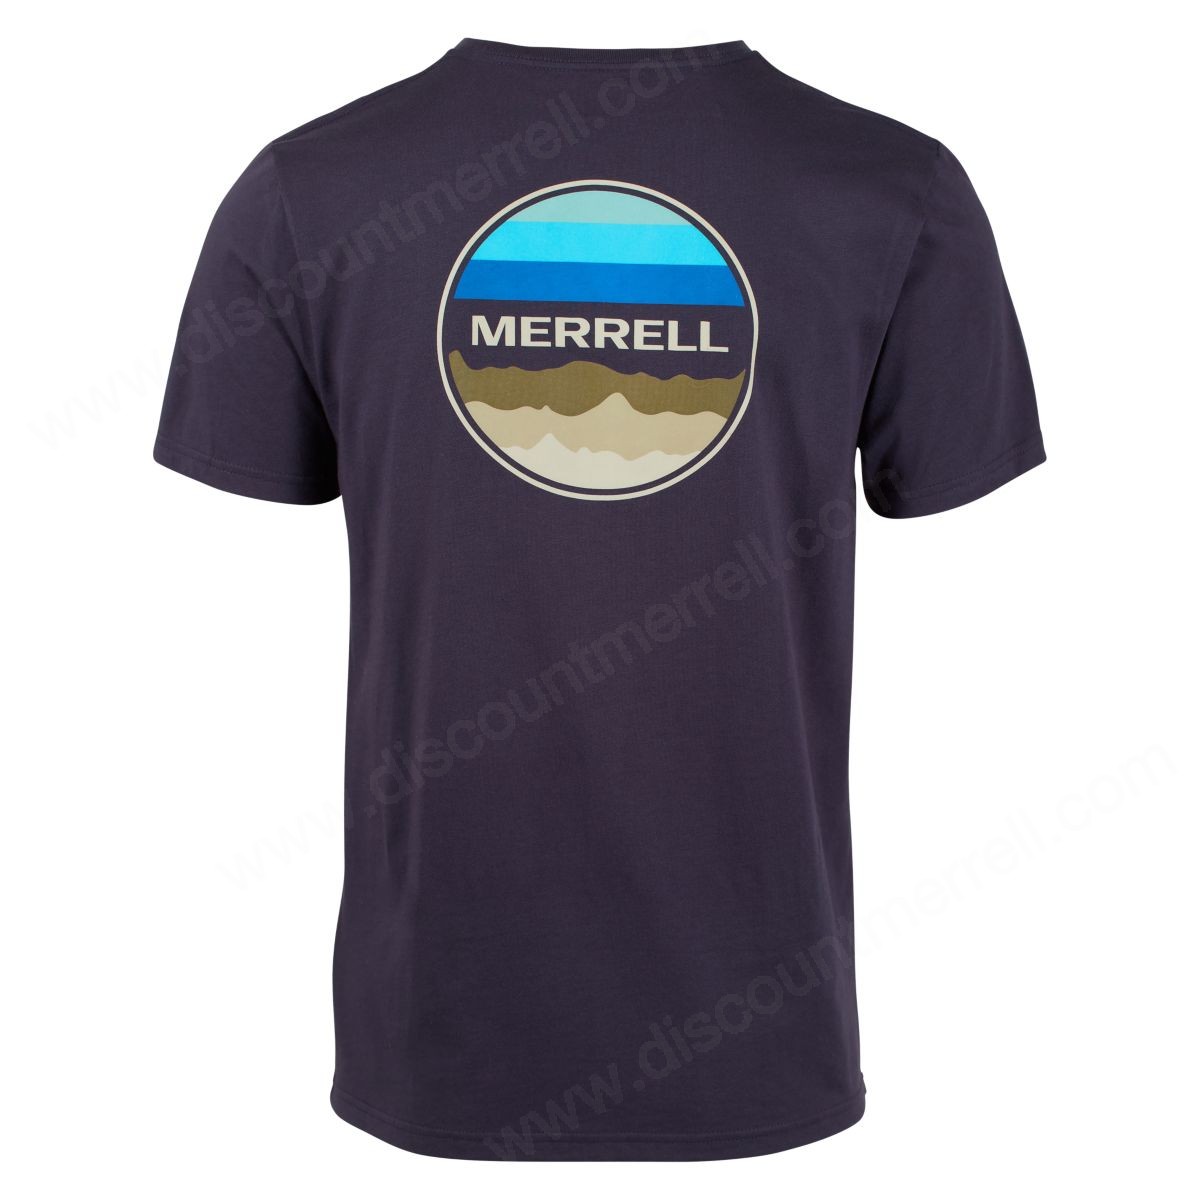 Merrell Mens's Vista Graphic Tshirt Navy - -1